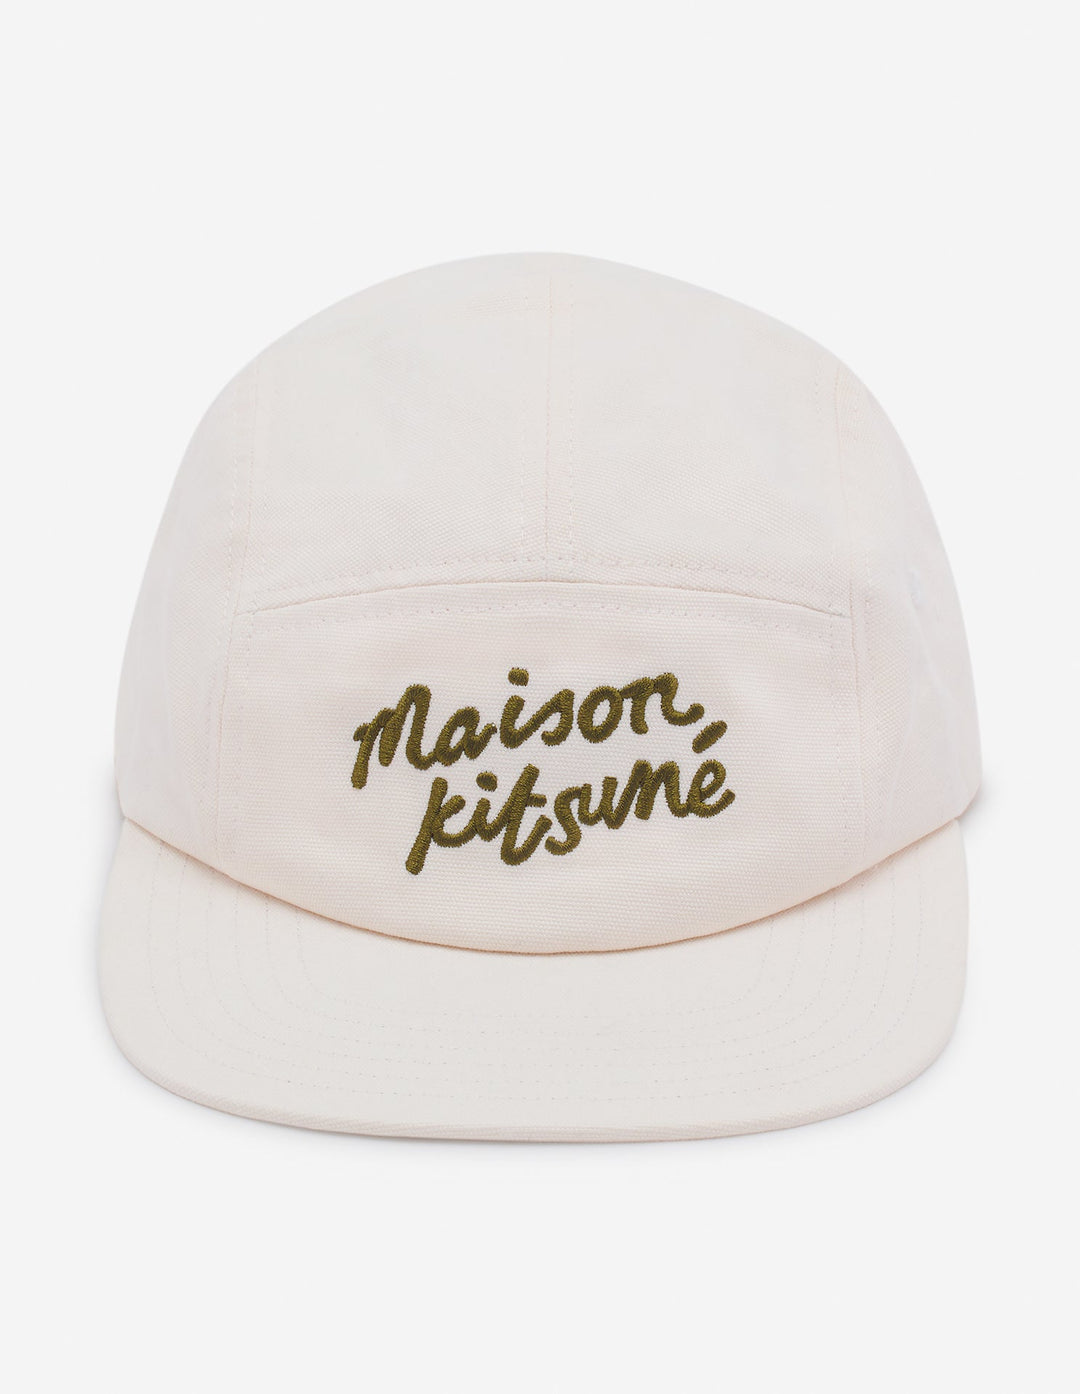 MAISON KITSUNE HANDWRITING 5P CAP